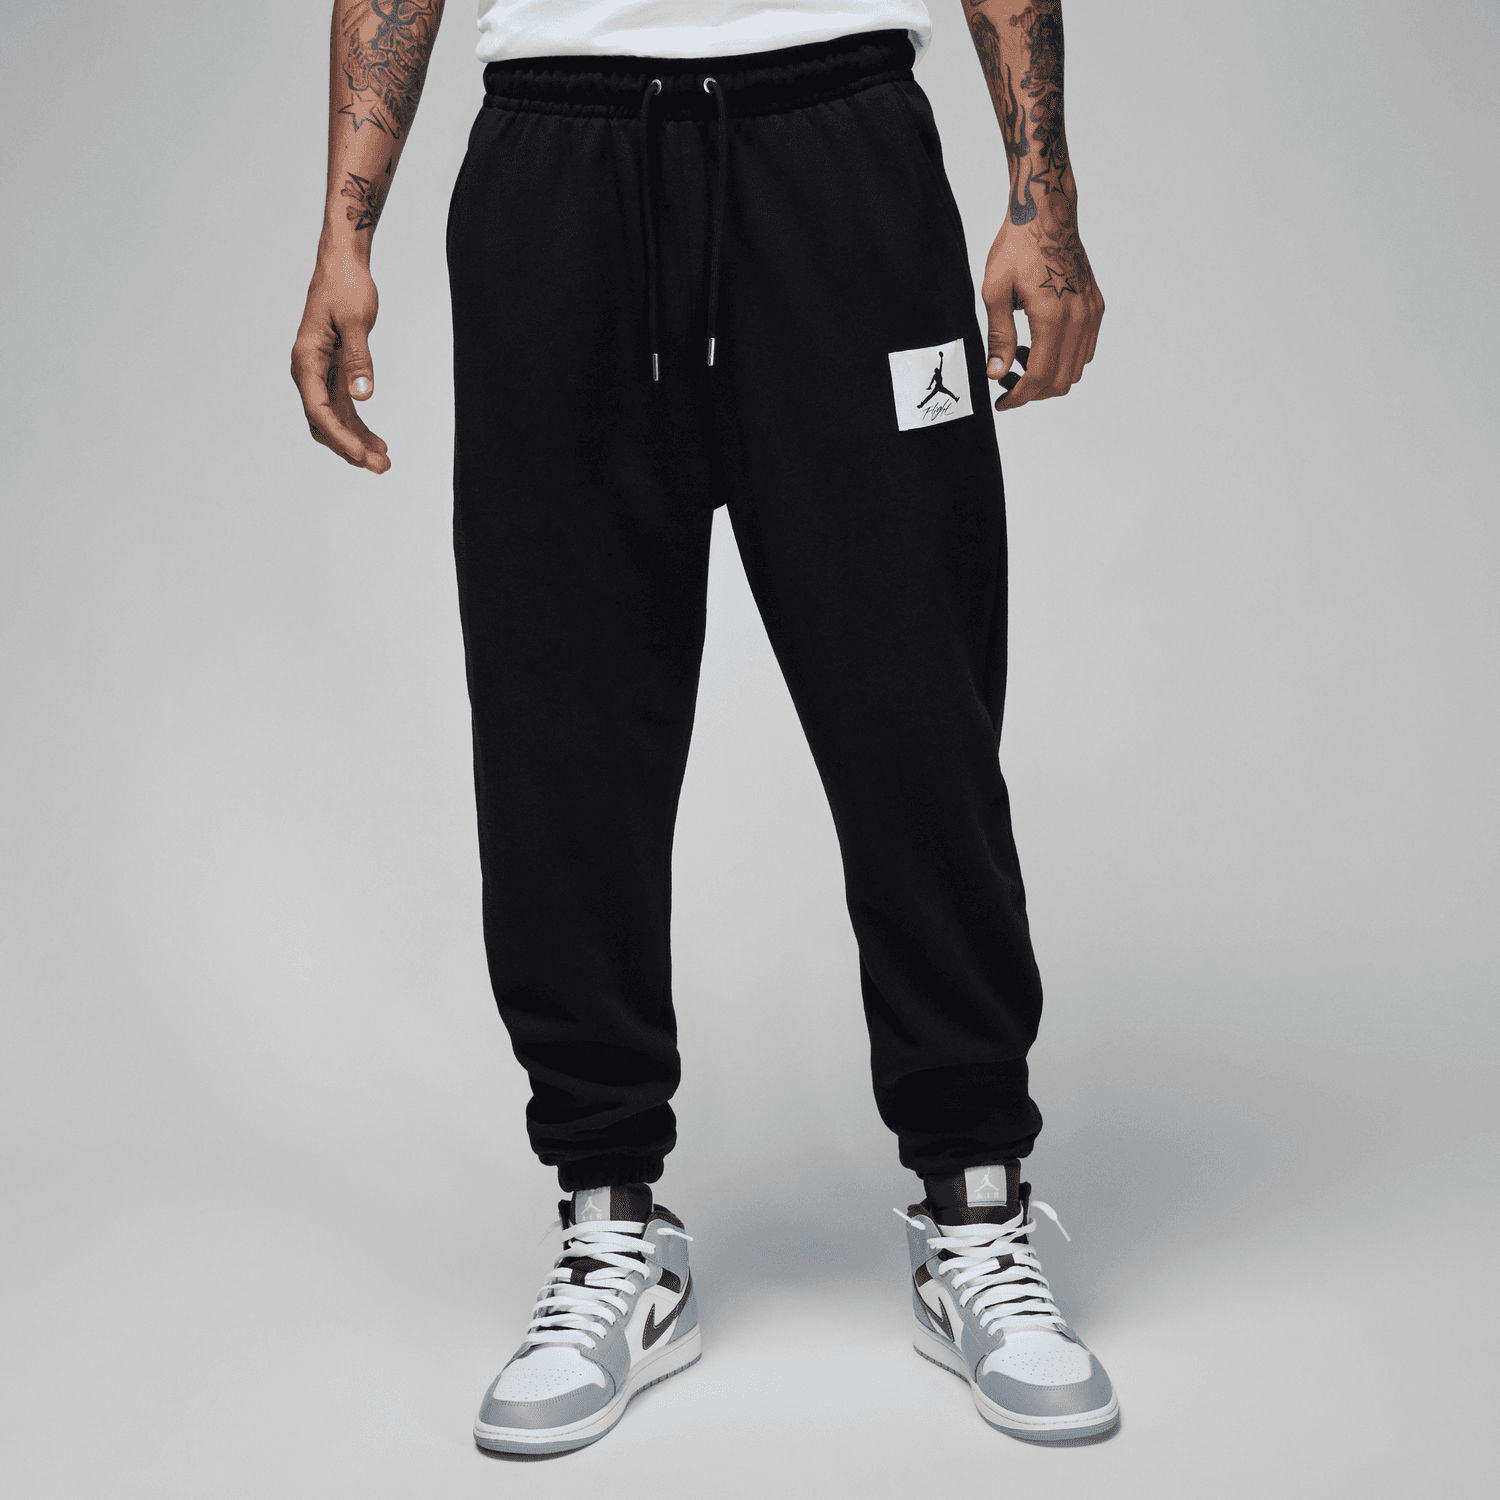 Nike Air fleece sweatpants in black - BLACK